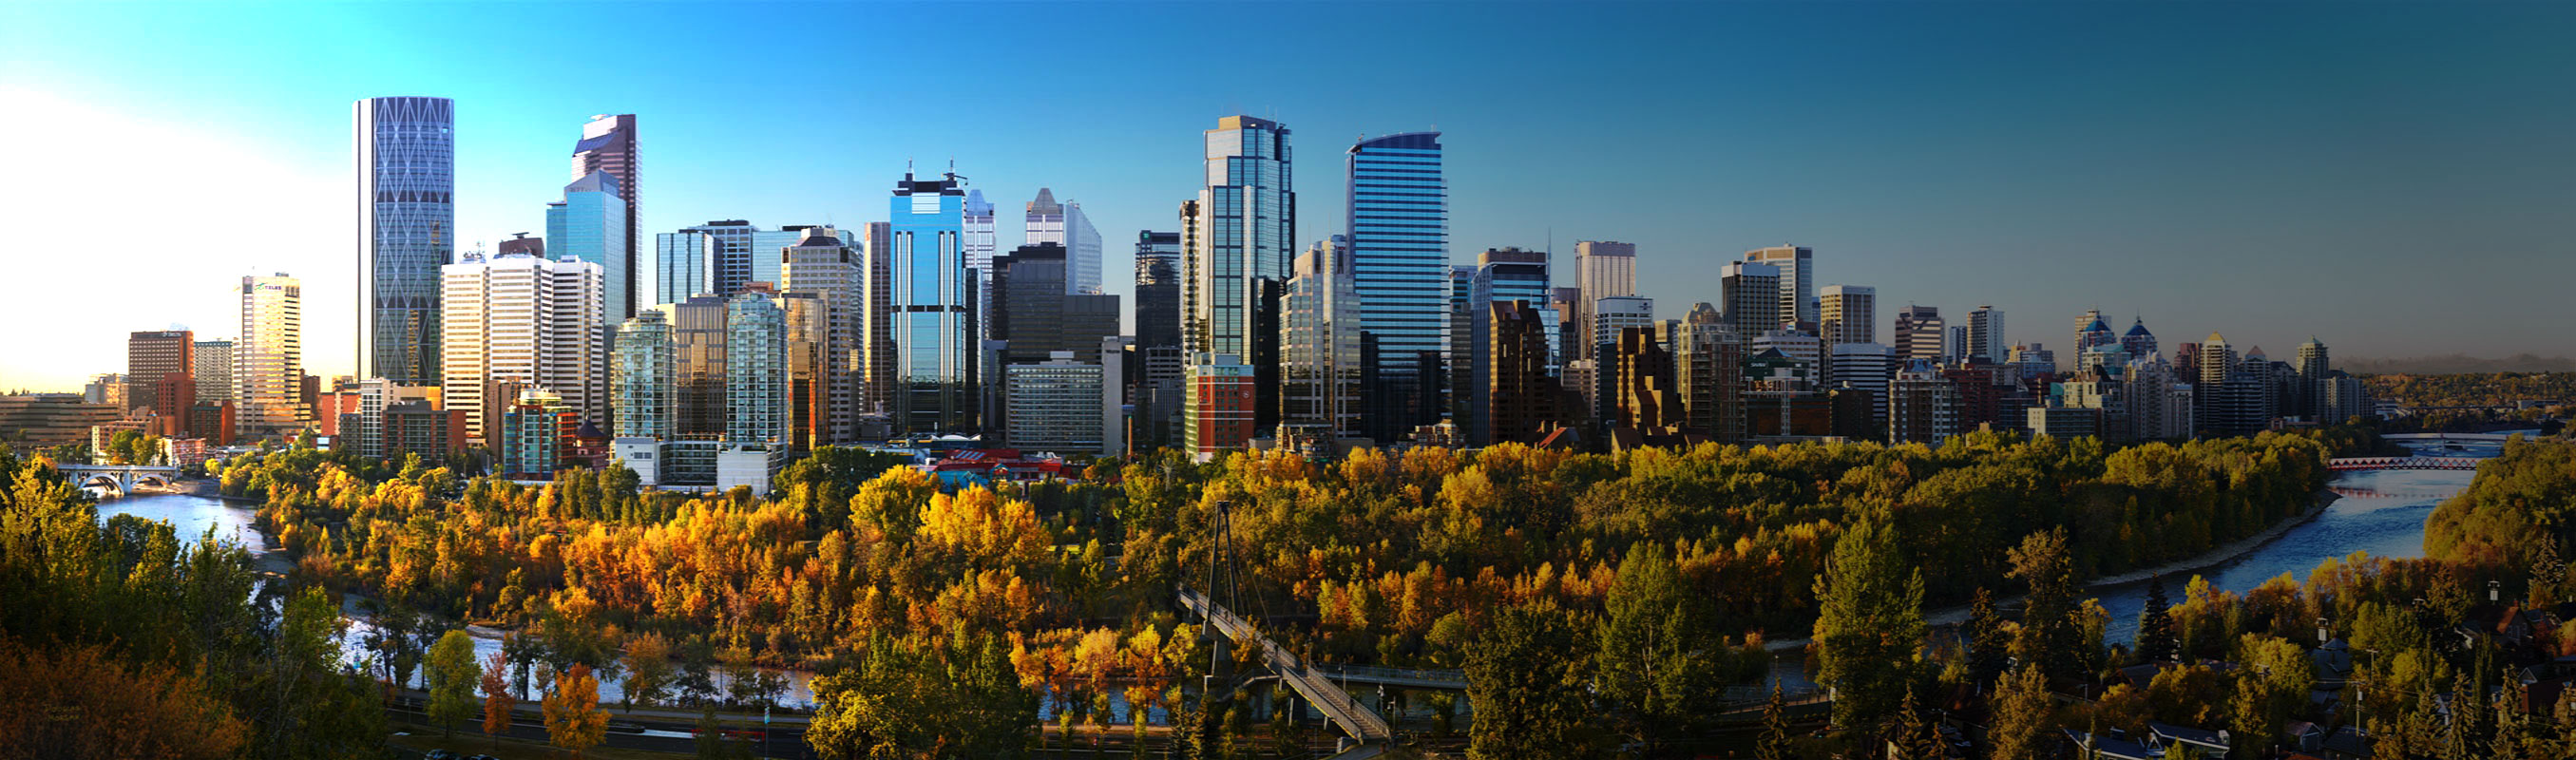 Background Image of Calgary